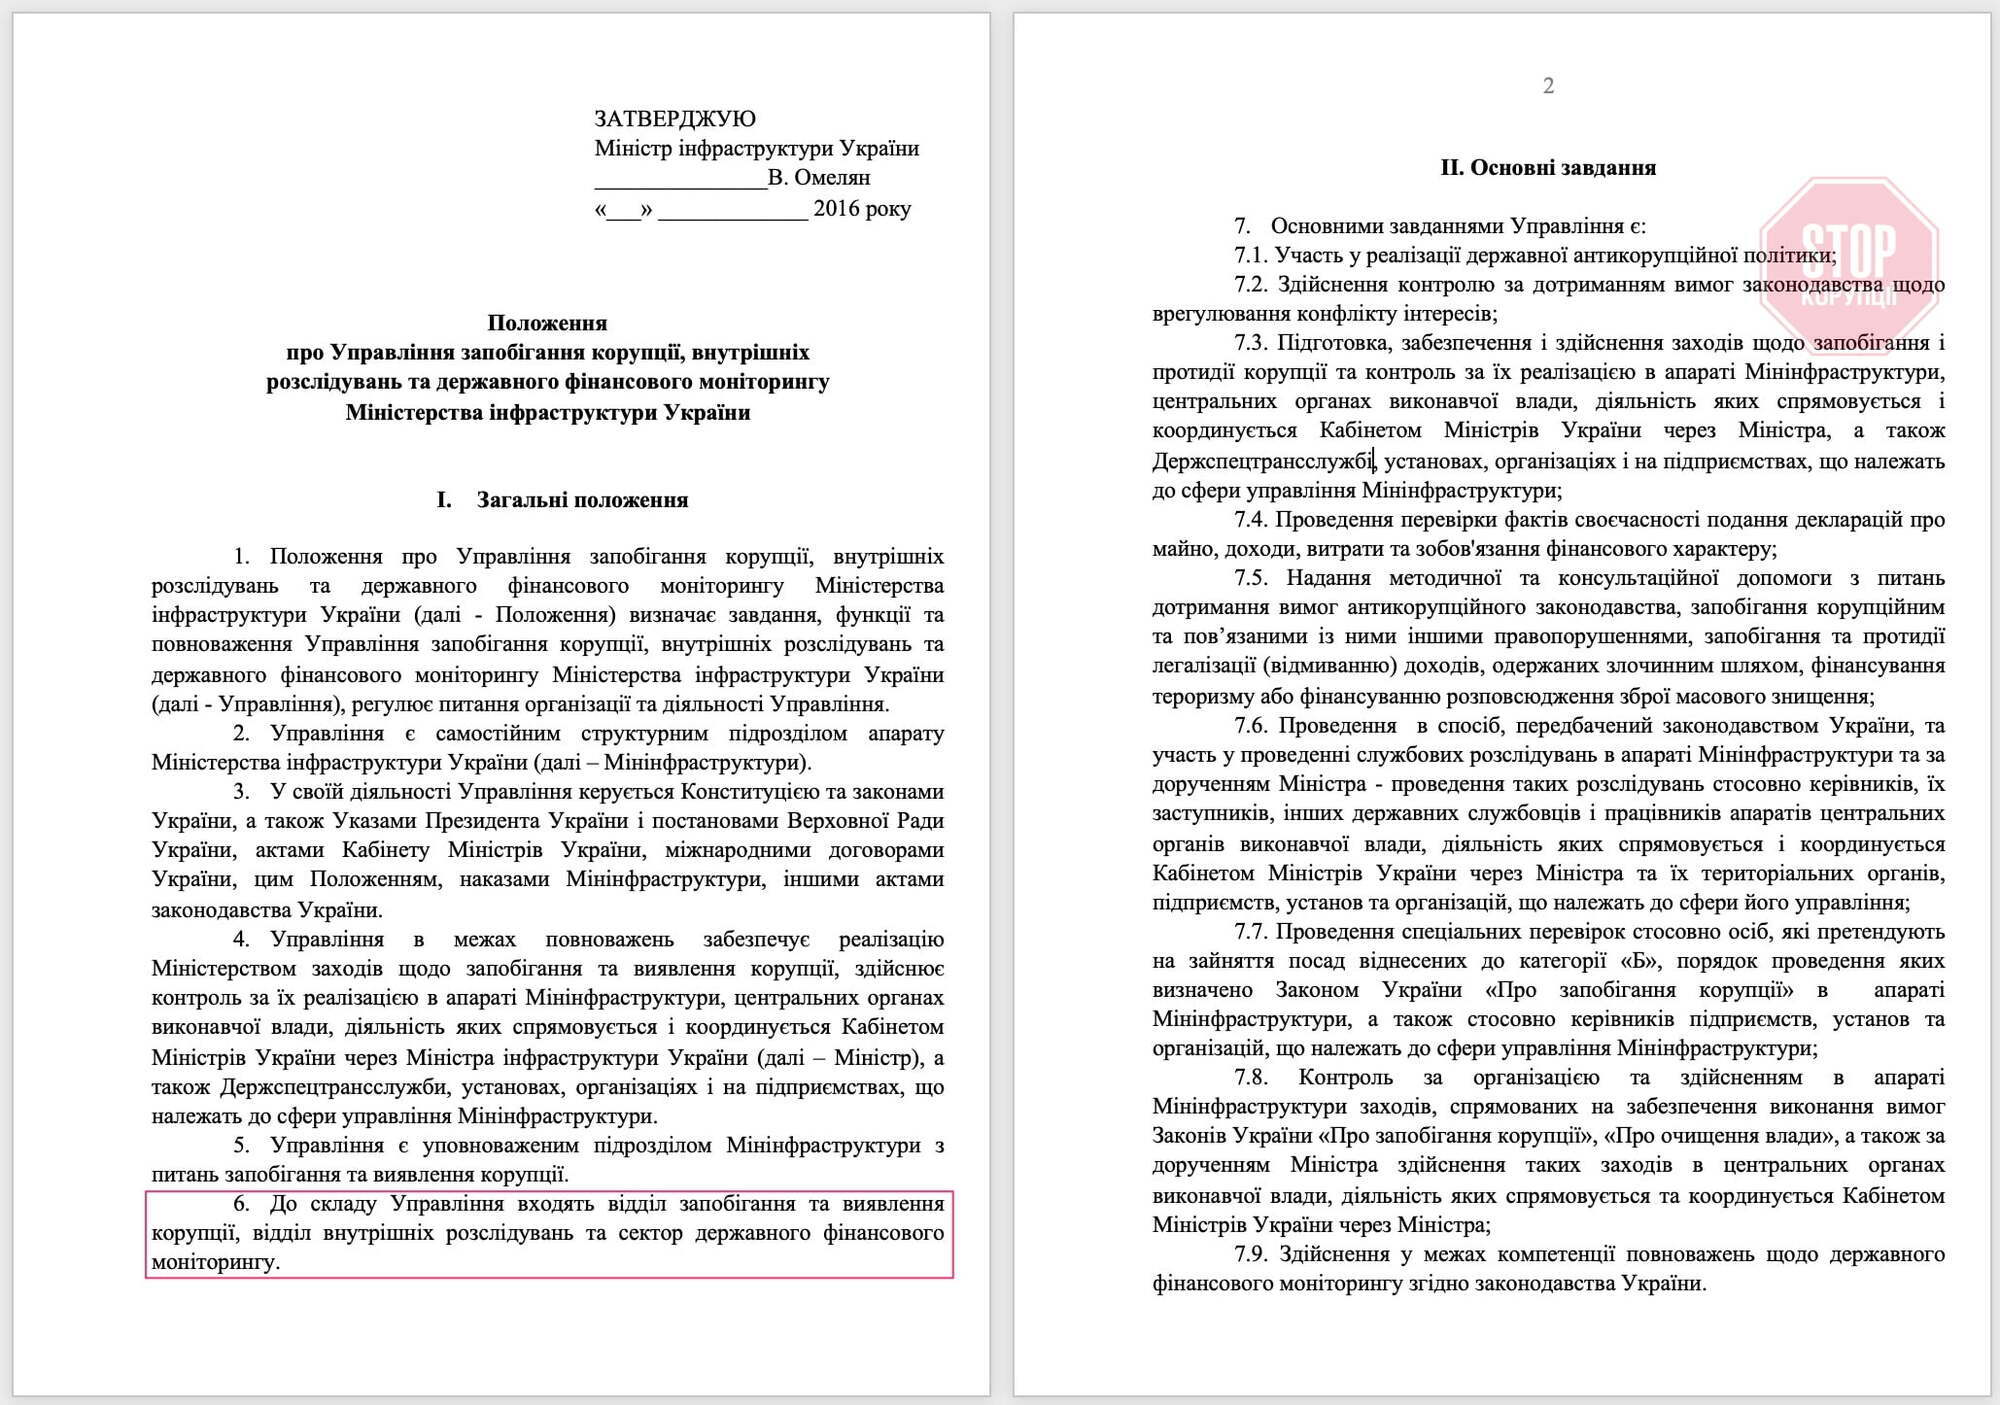 Положення про Управління запобігання корупції, внутрішніх розслідувань та державного фінансового моніторингу Міністерства інфраструктури України